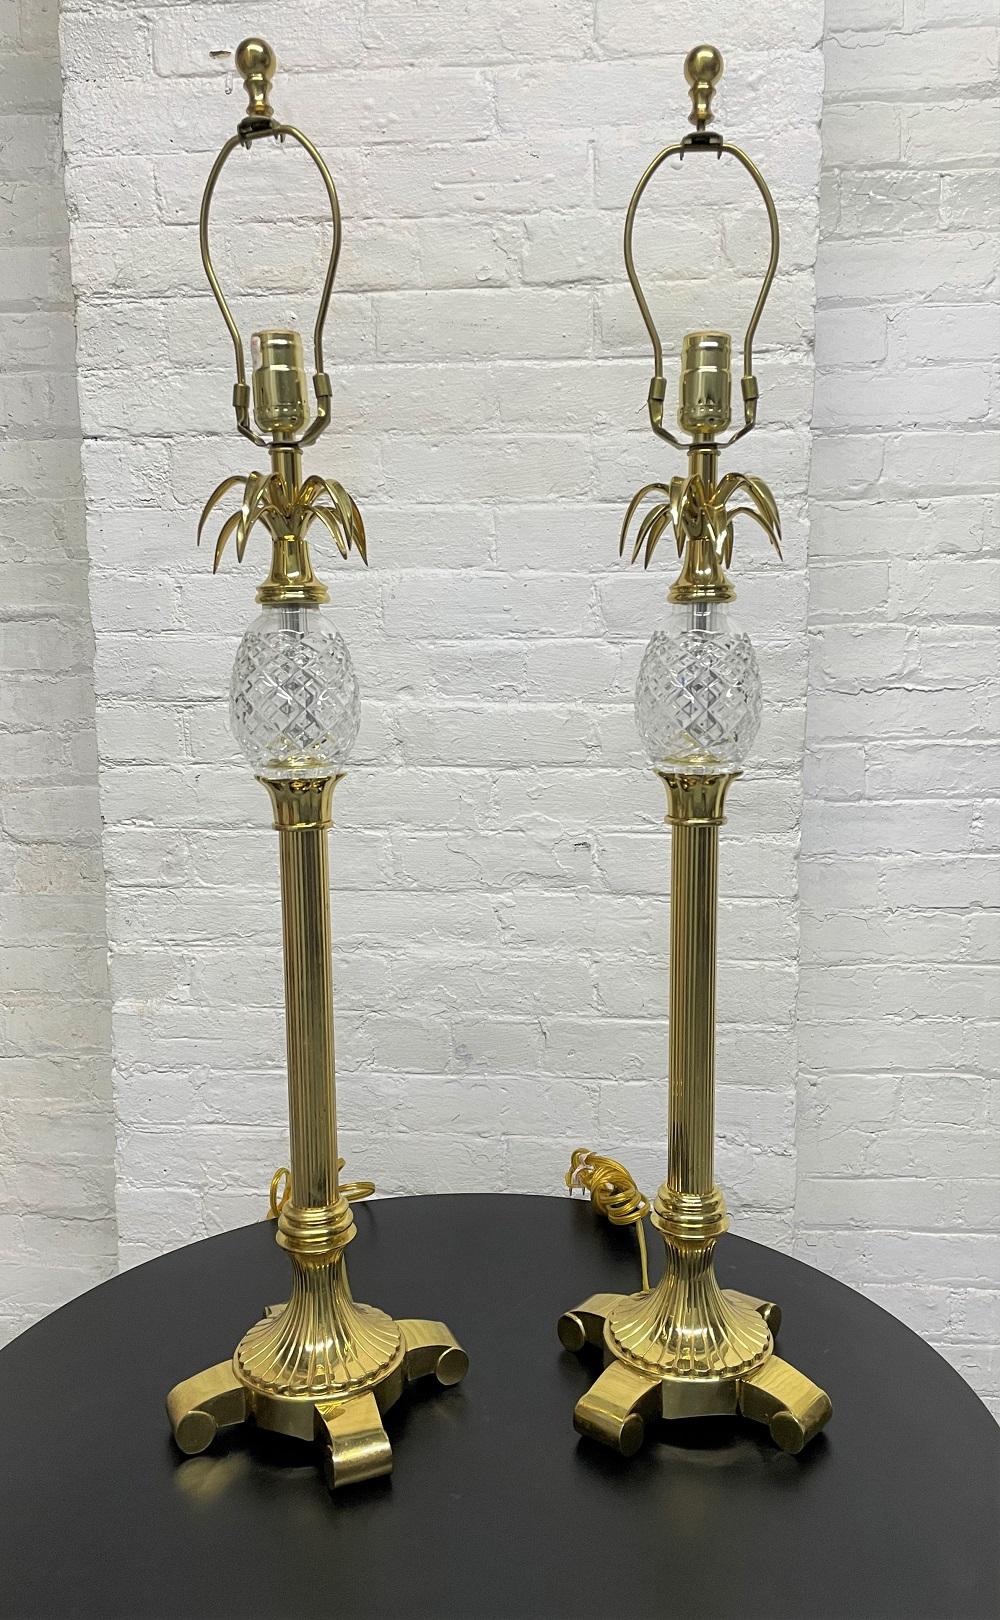 Paire de lampes ananas en laiton et cristal.
Mesures : 35H. Base : 8x8.